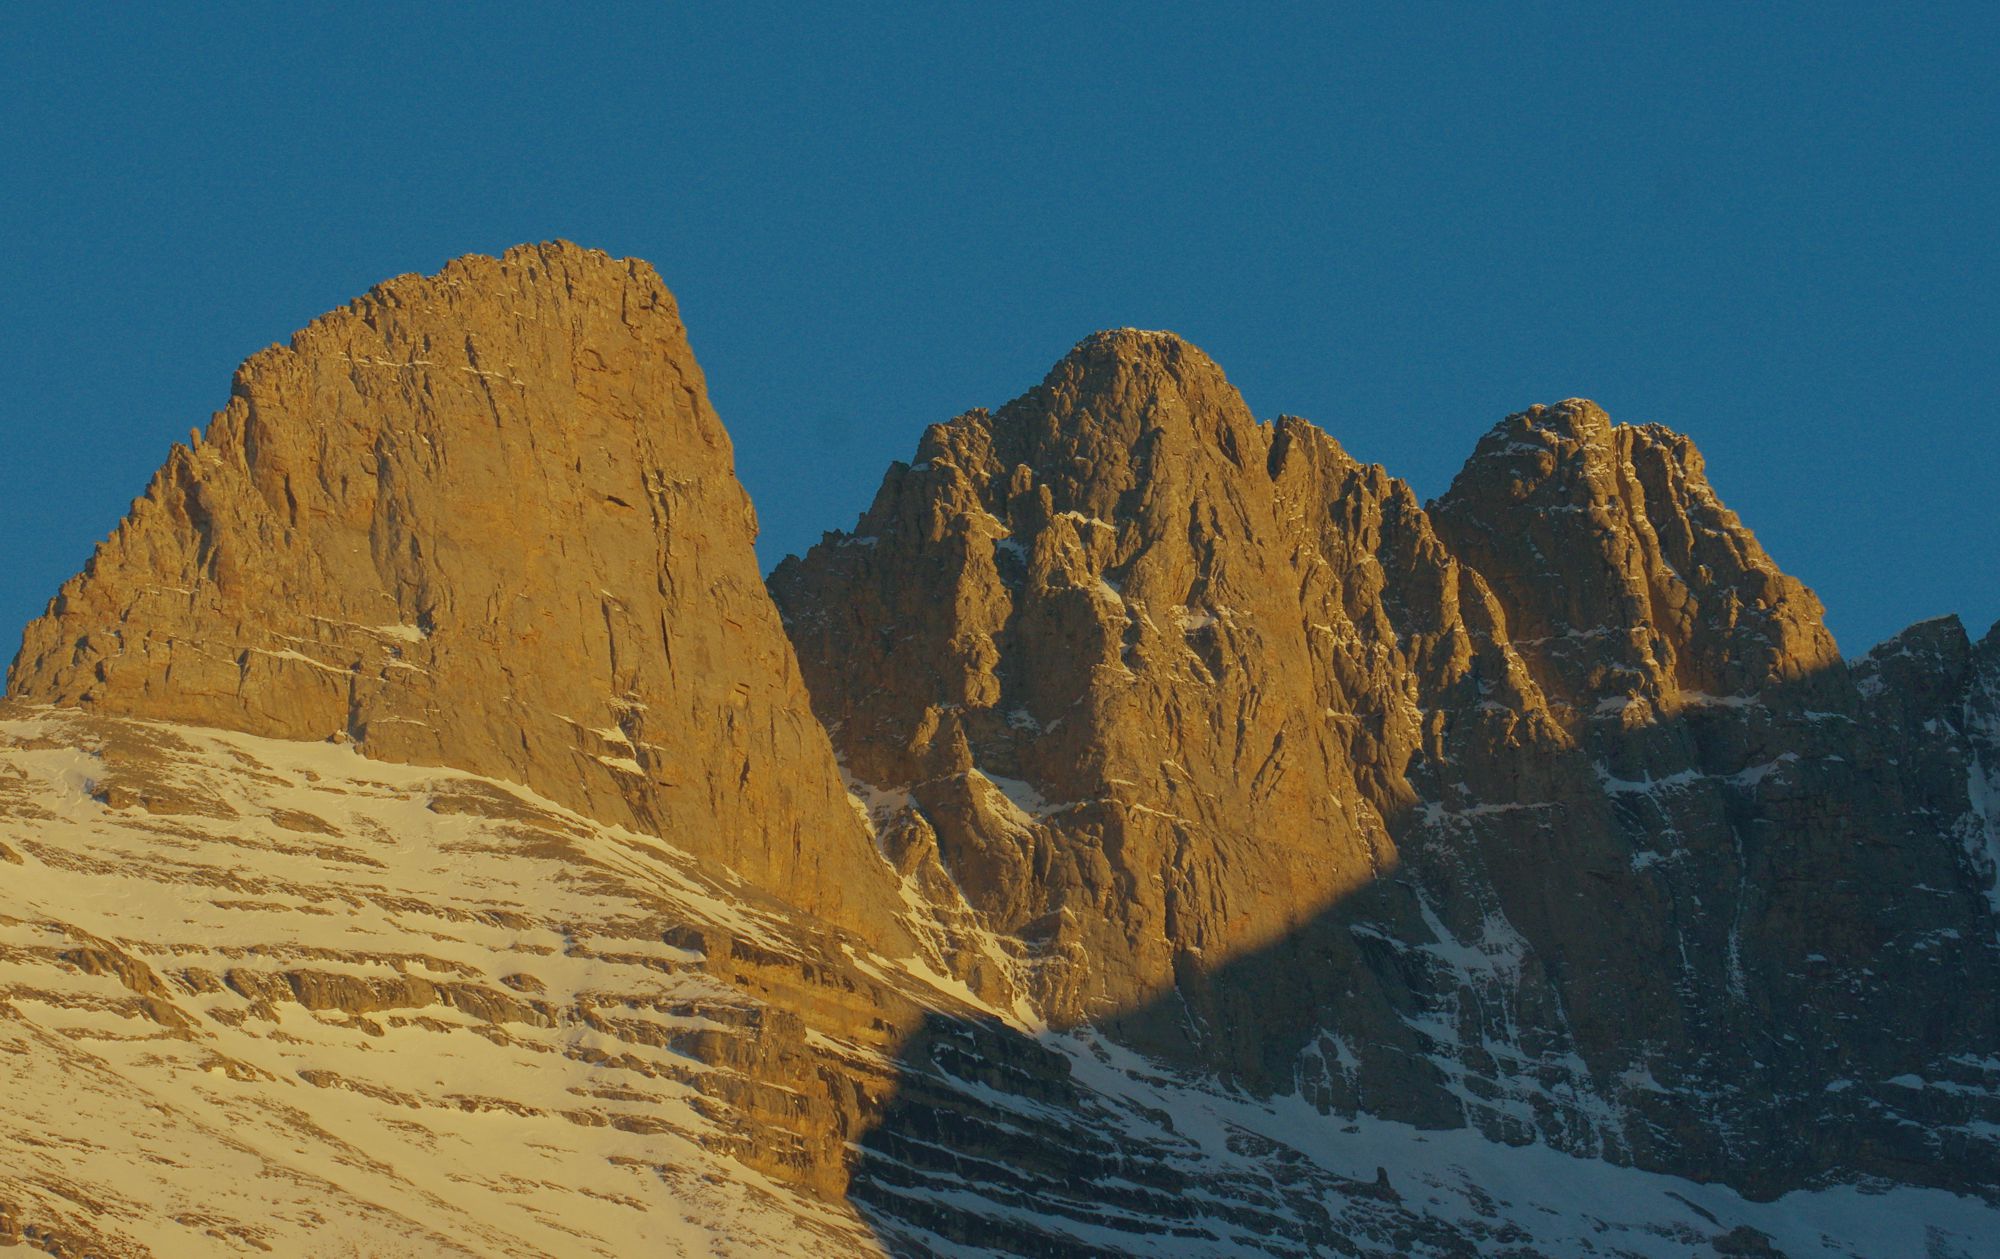 Εθνικός Δρυμός Ολύμπου: Οι ψηλότερες κορυφές του Ολύμπου και το Οροπέδιο των Μουσών από τα βόρεια